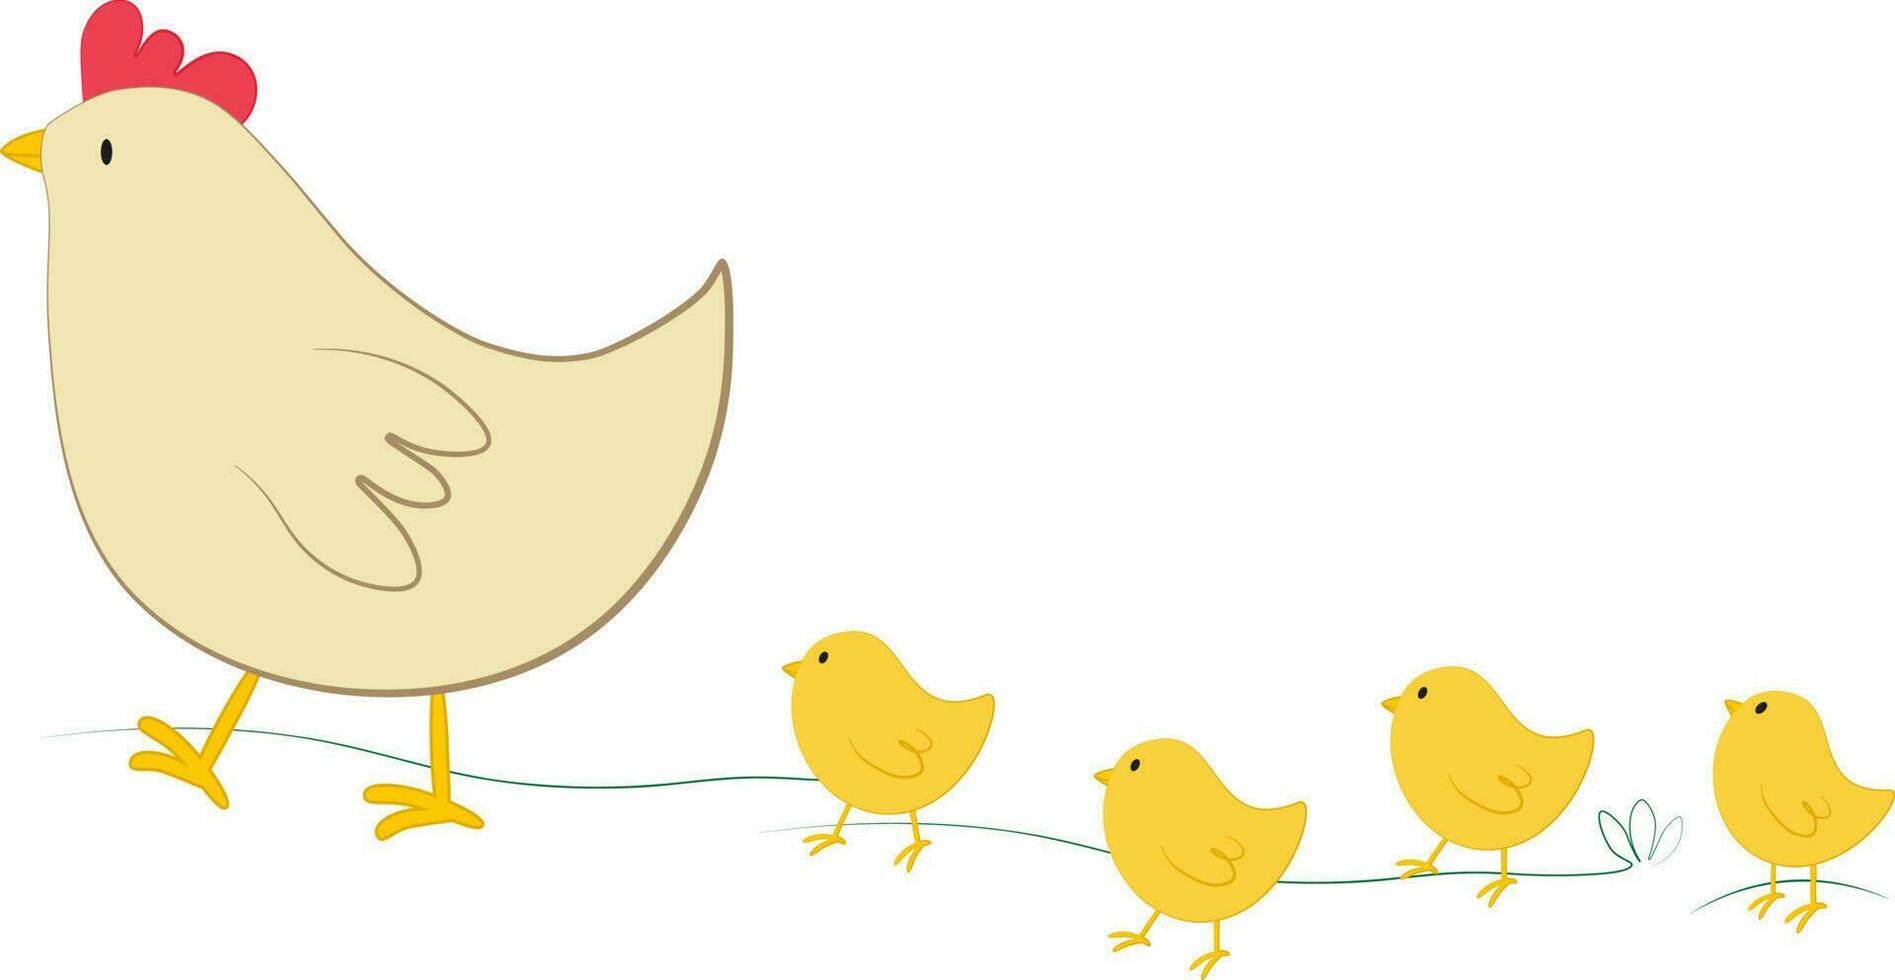 Vektor Illustration von Orange Hähnchen und wenig Gelb Küken Zeichen im Karikatur Stil. Digital Clip Art mit Bauernhof Henne und Küken zum Ostern Design